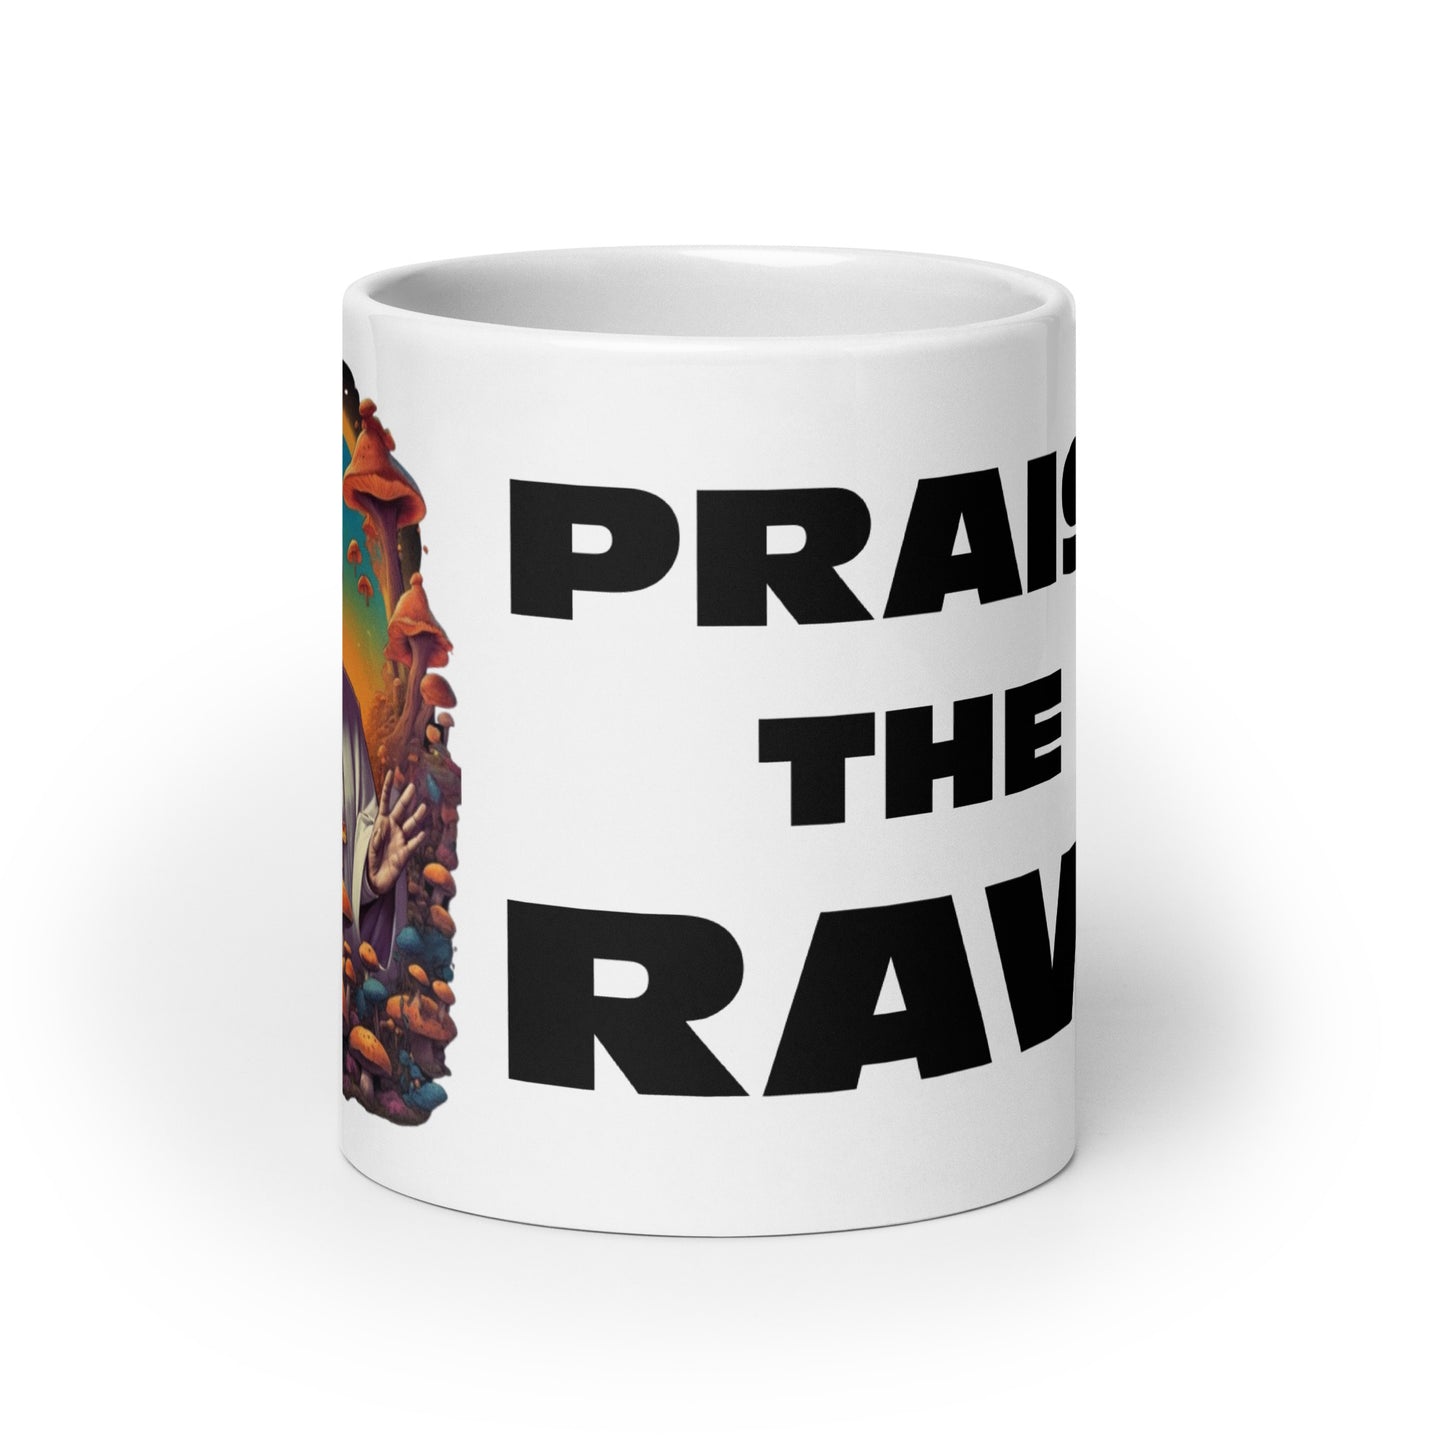 Praise the Rave - White glossy mug